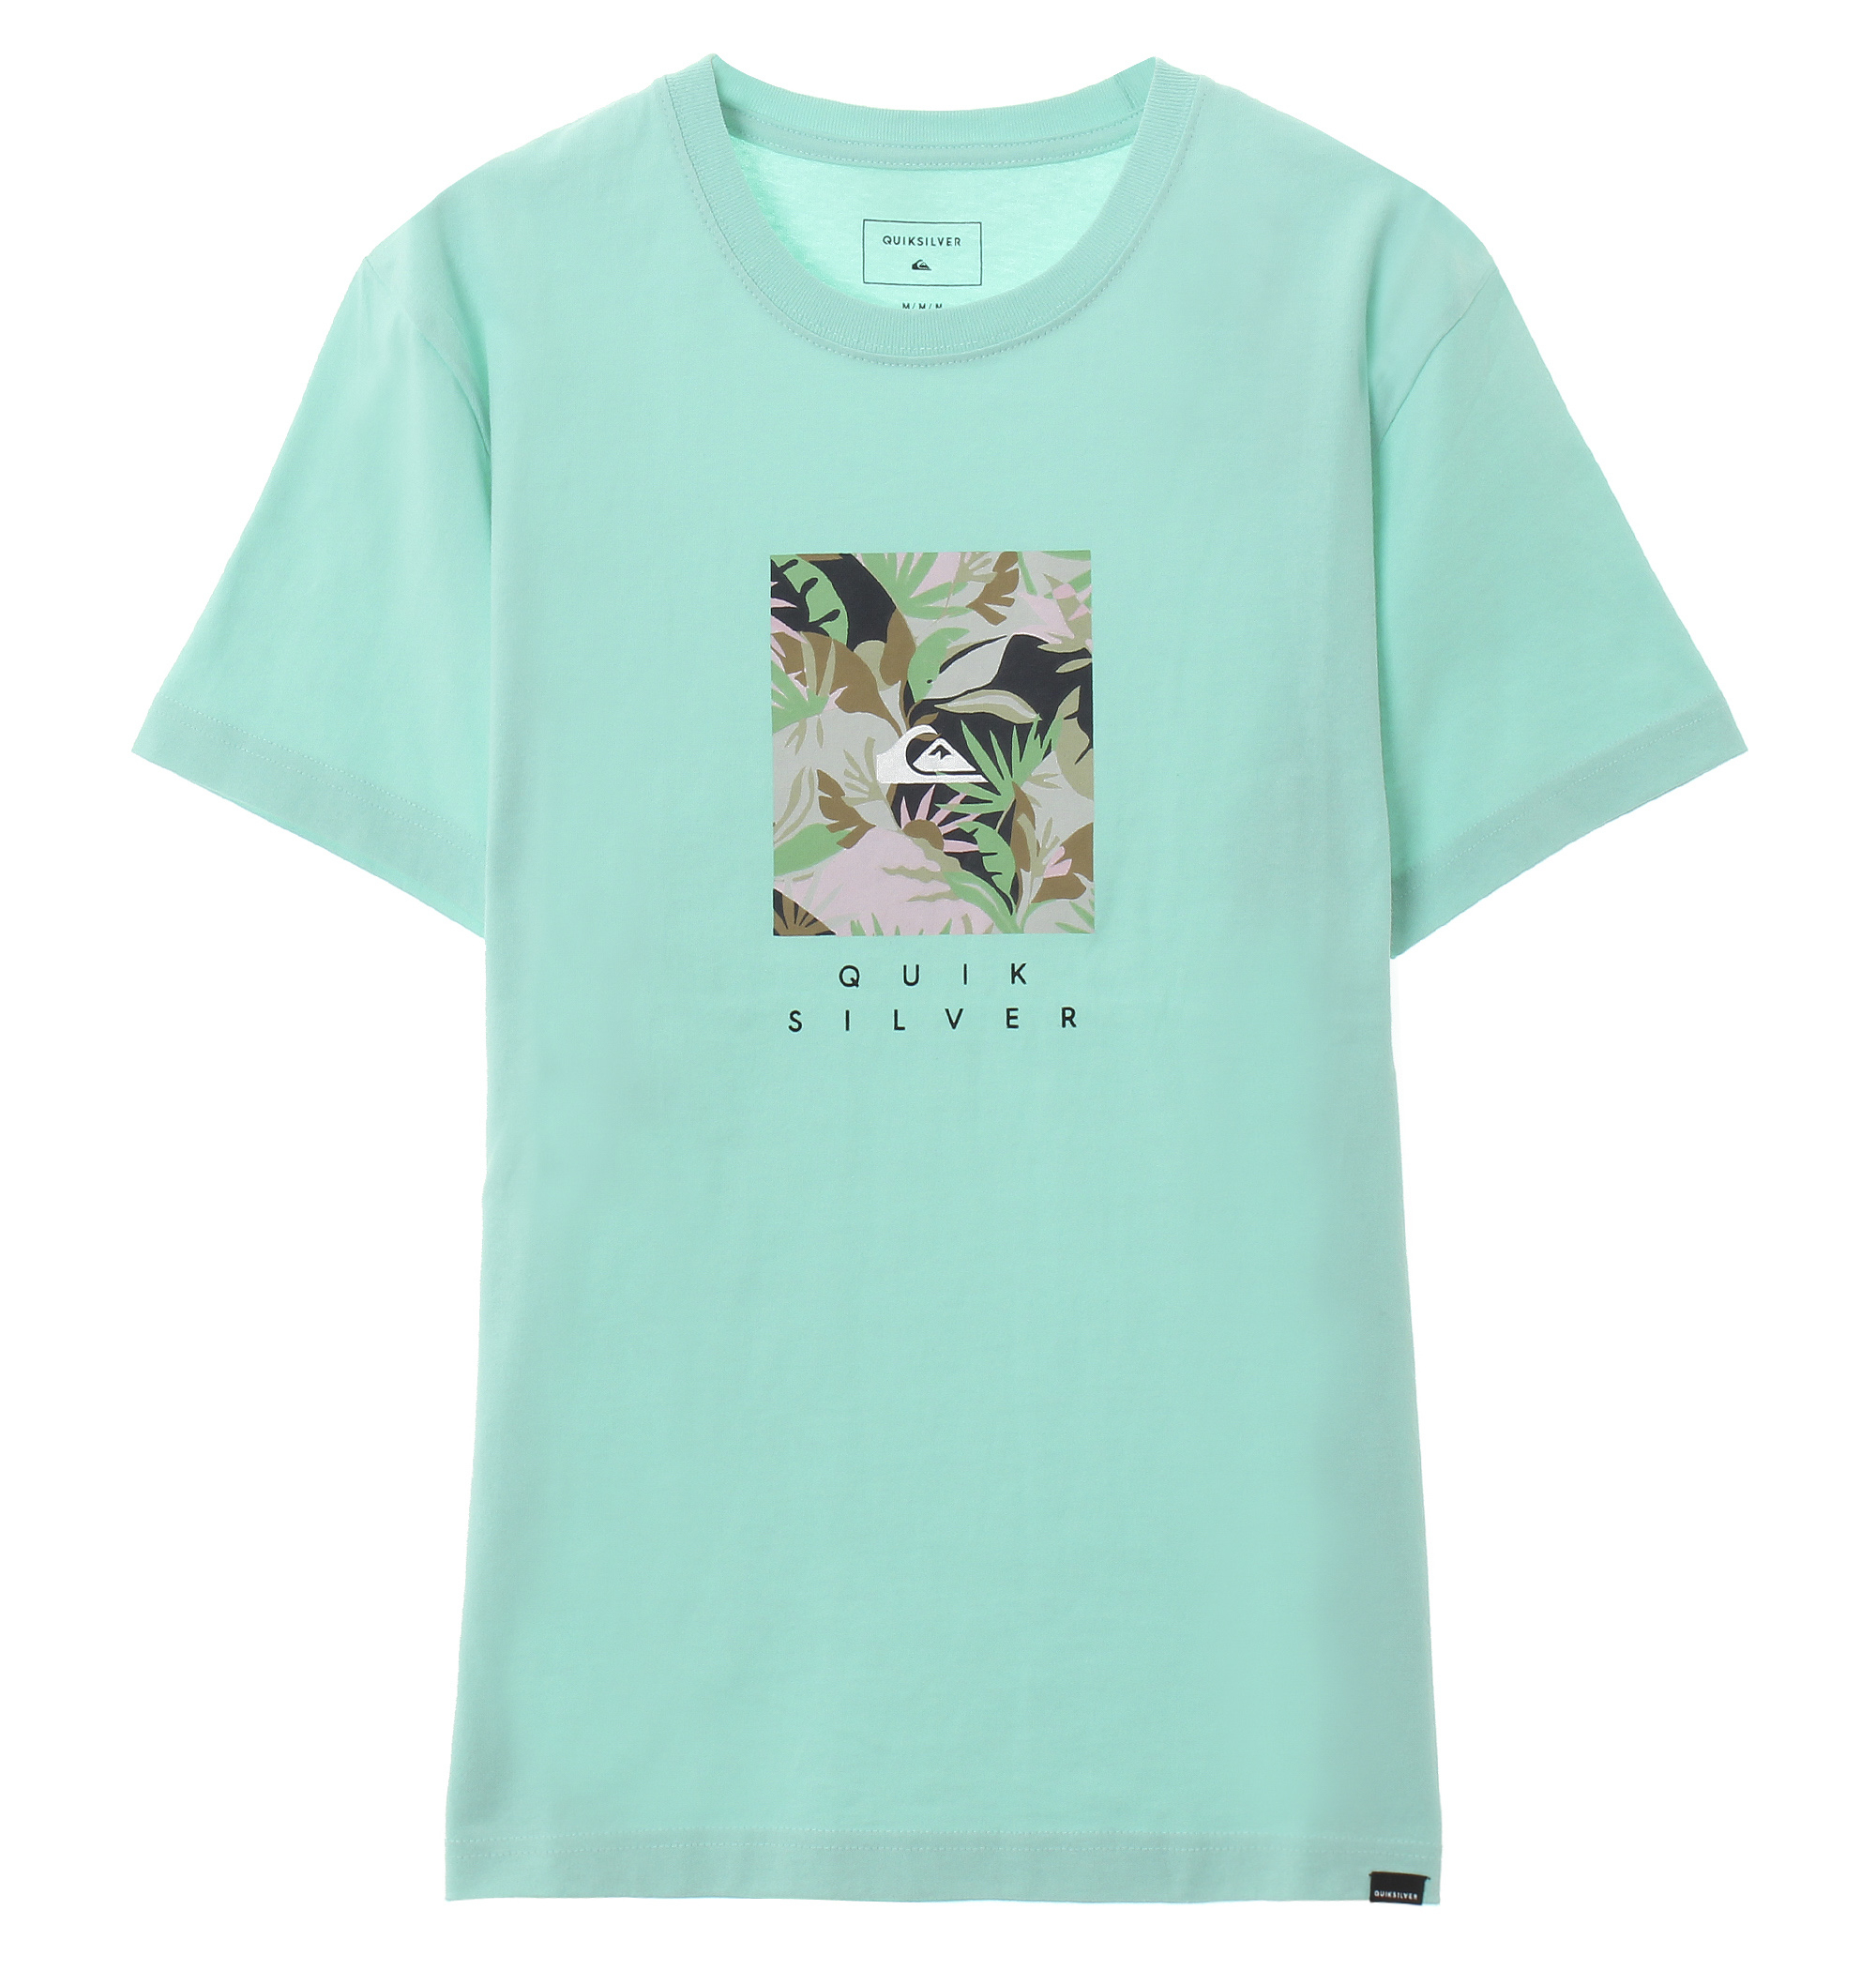 35%OFF！ ISLAND BOX ST グラフィカルなボタニカル柄×ブランドロゴの組み合わせがキャッチーなデザインのクルーネック半袖Tシャツ